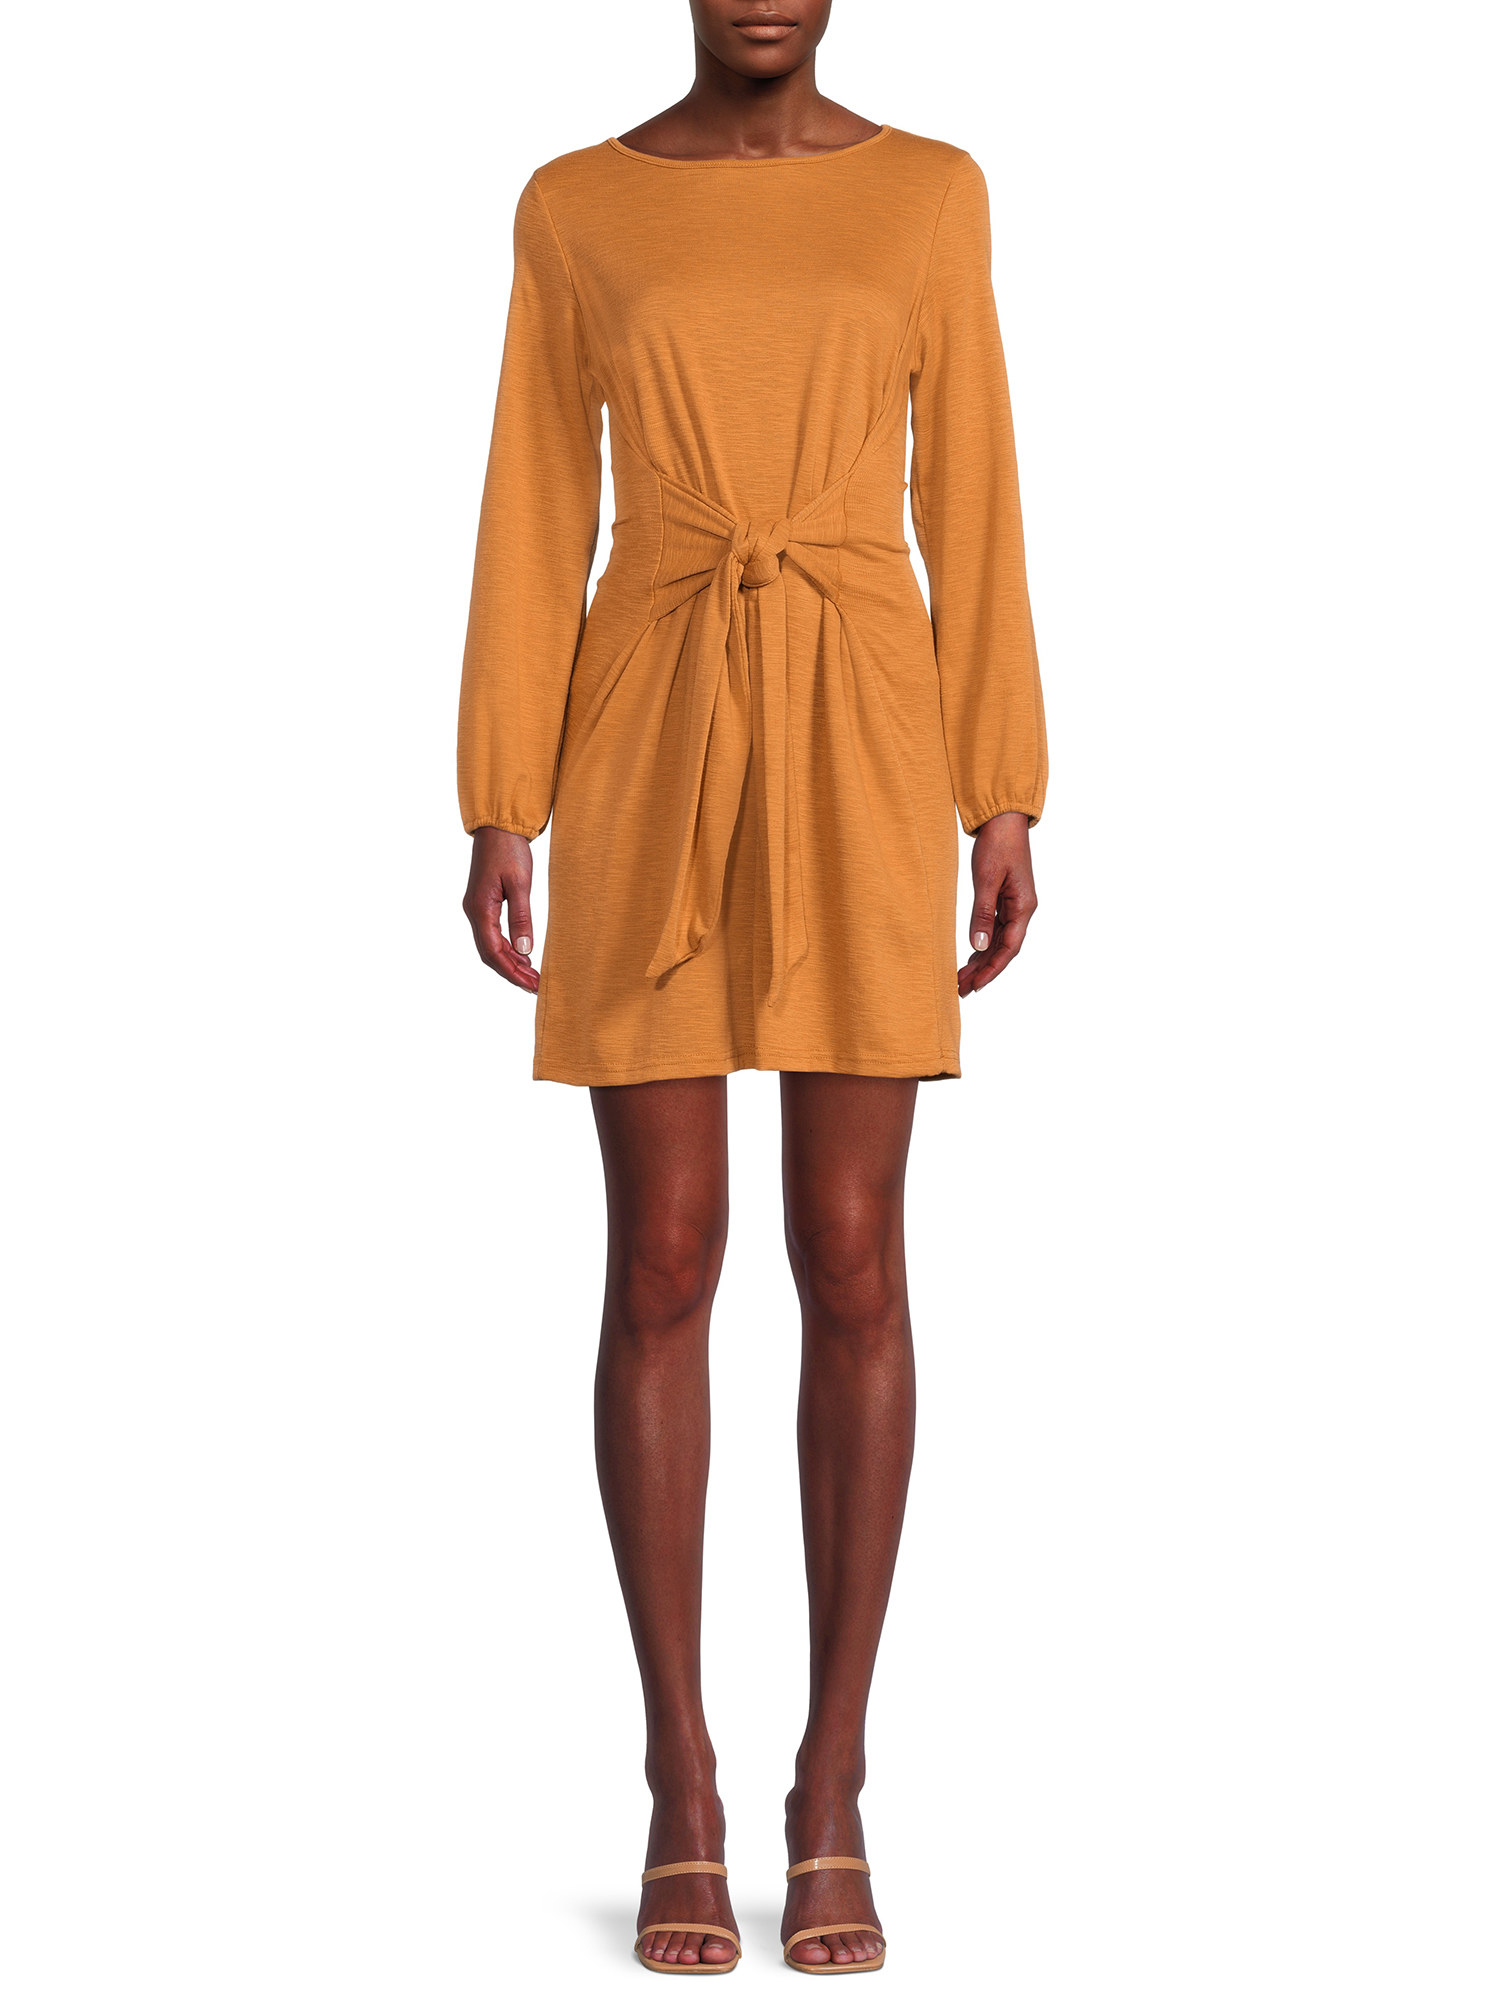 A model wearing the orange dress